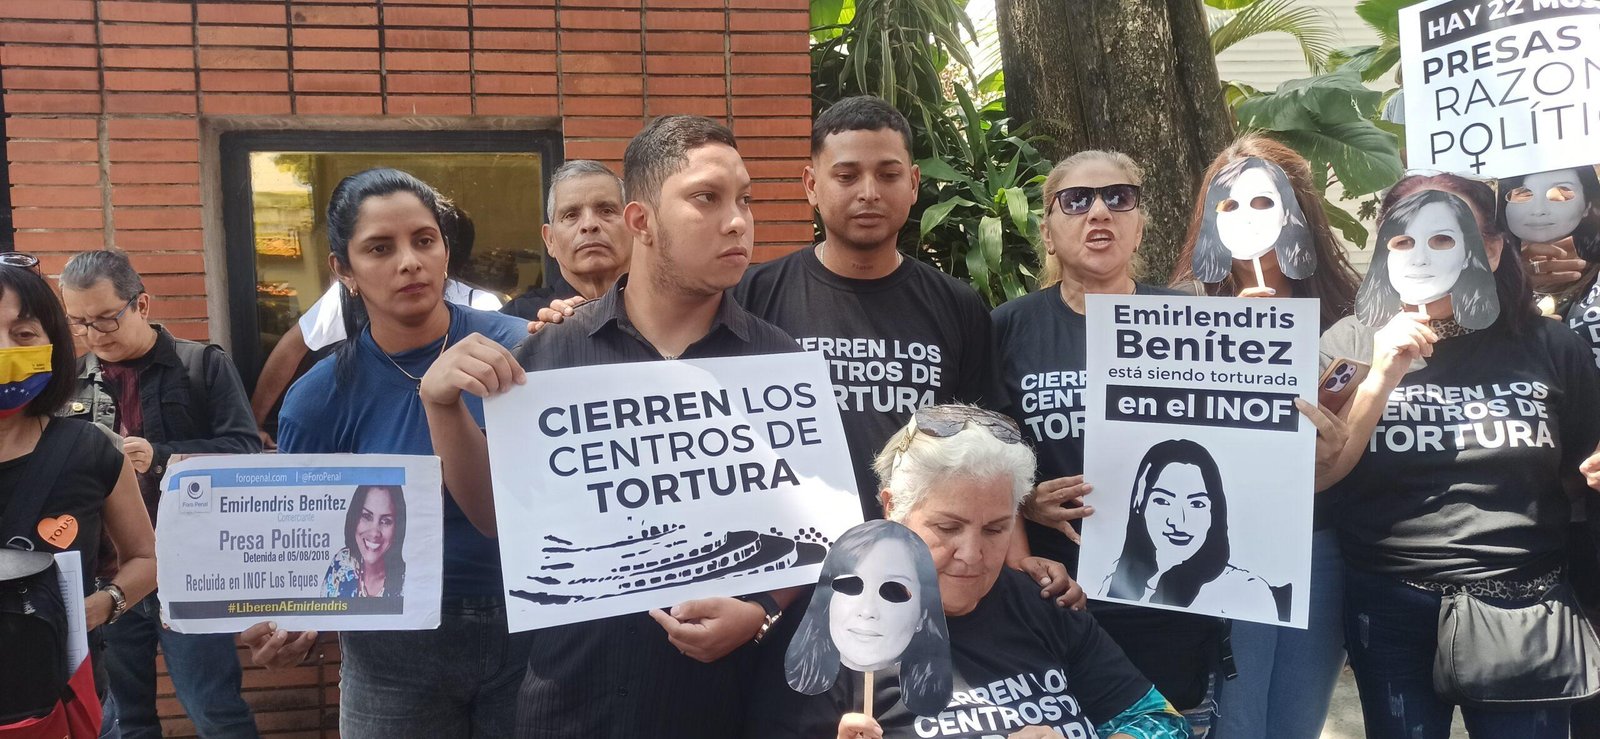 Protestas en la embajada de España por rocio san miguel